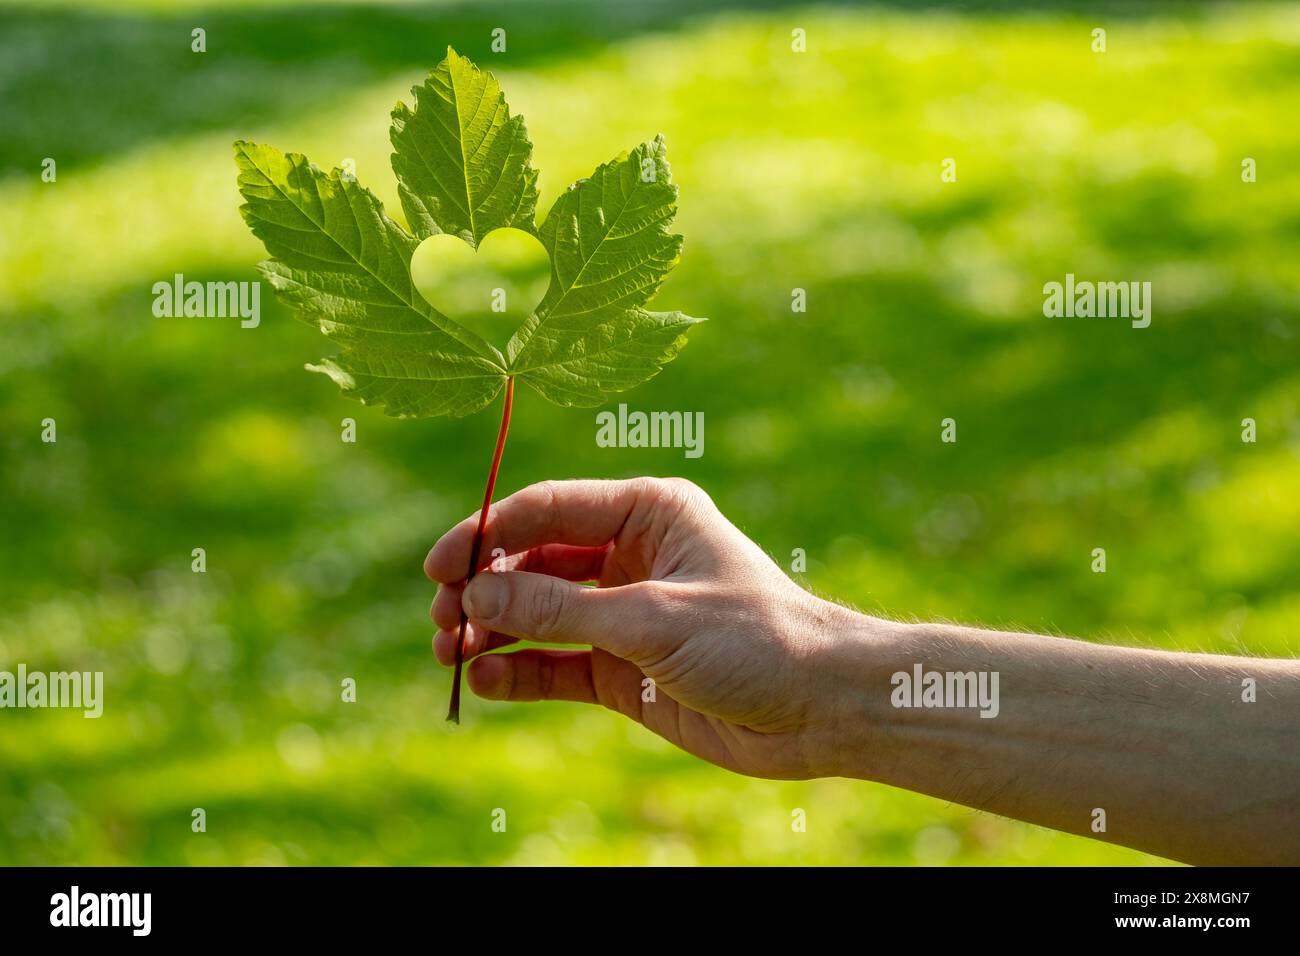 Männliche Hand, die herzförmiges grünes Blattholz hält, Verbindung zwischen Natur und Herzgesundheit, Herzpflege, umweltfreundliches Leben Stockfoto